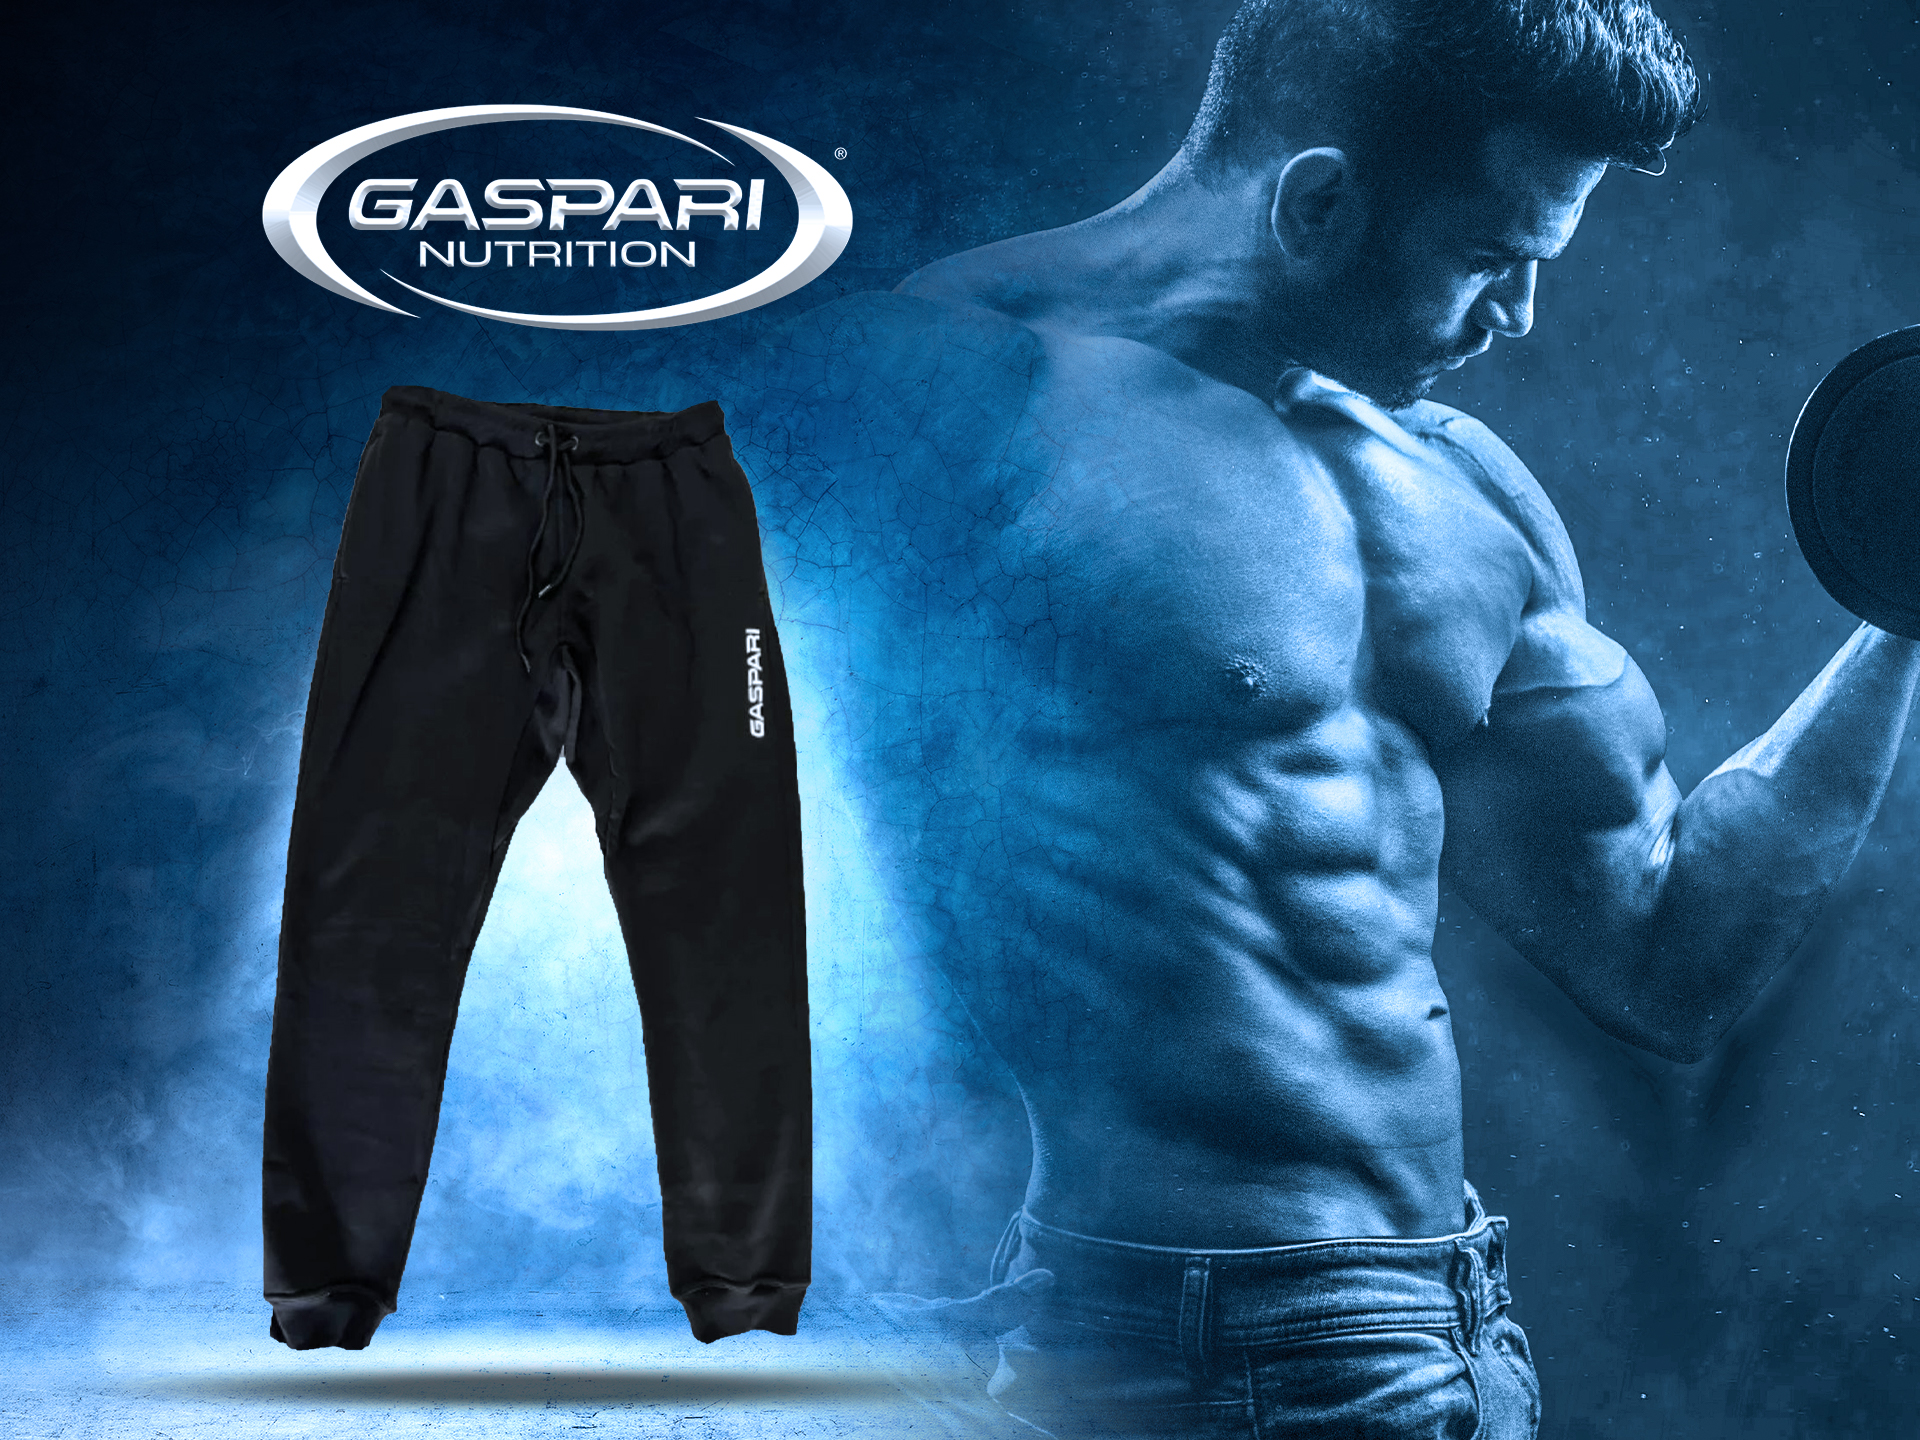 Spodnie treningowe Gaspari - wygoda i funkcjonalność